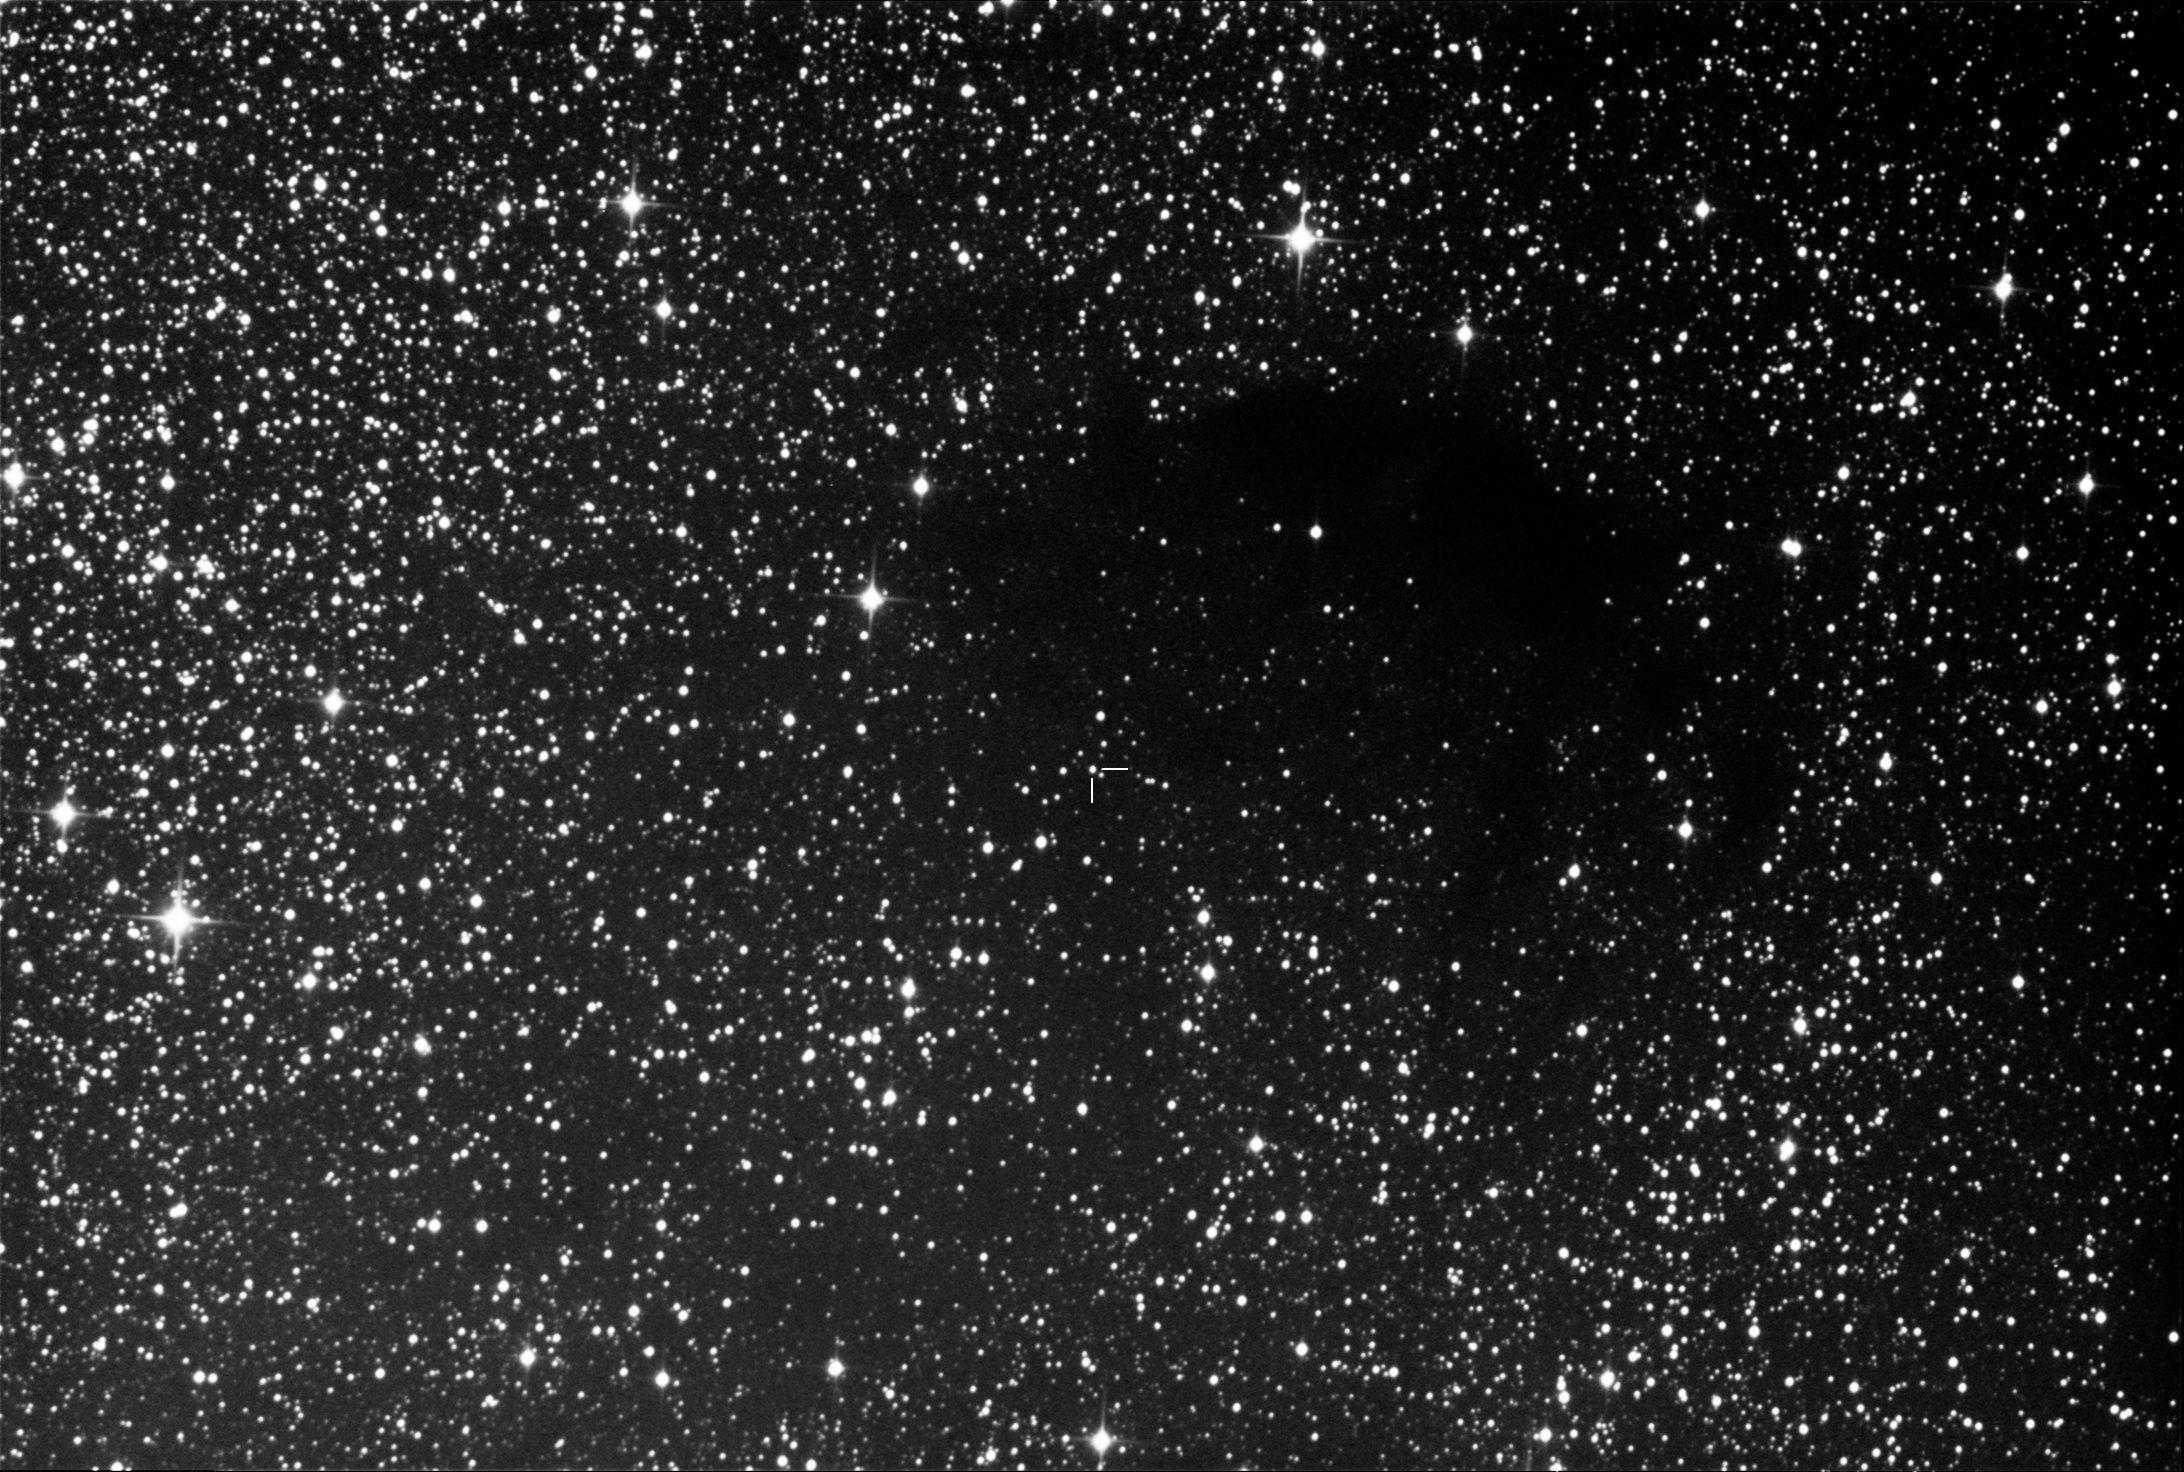 Звездная свет черной. Квазар APM 08279+5255. Космос звезды. Космос черно белый. Звездное небо черное.